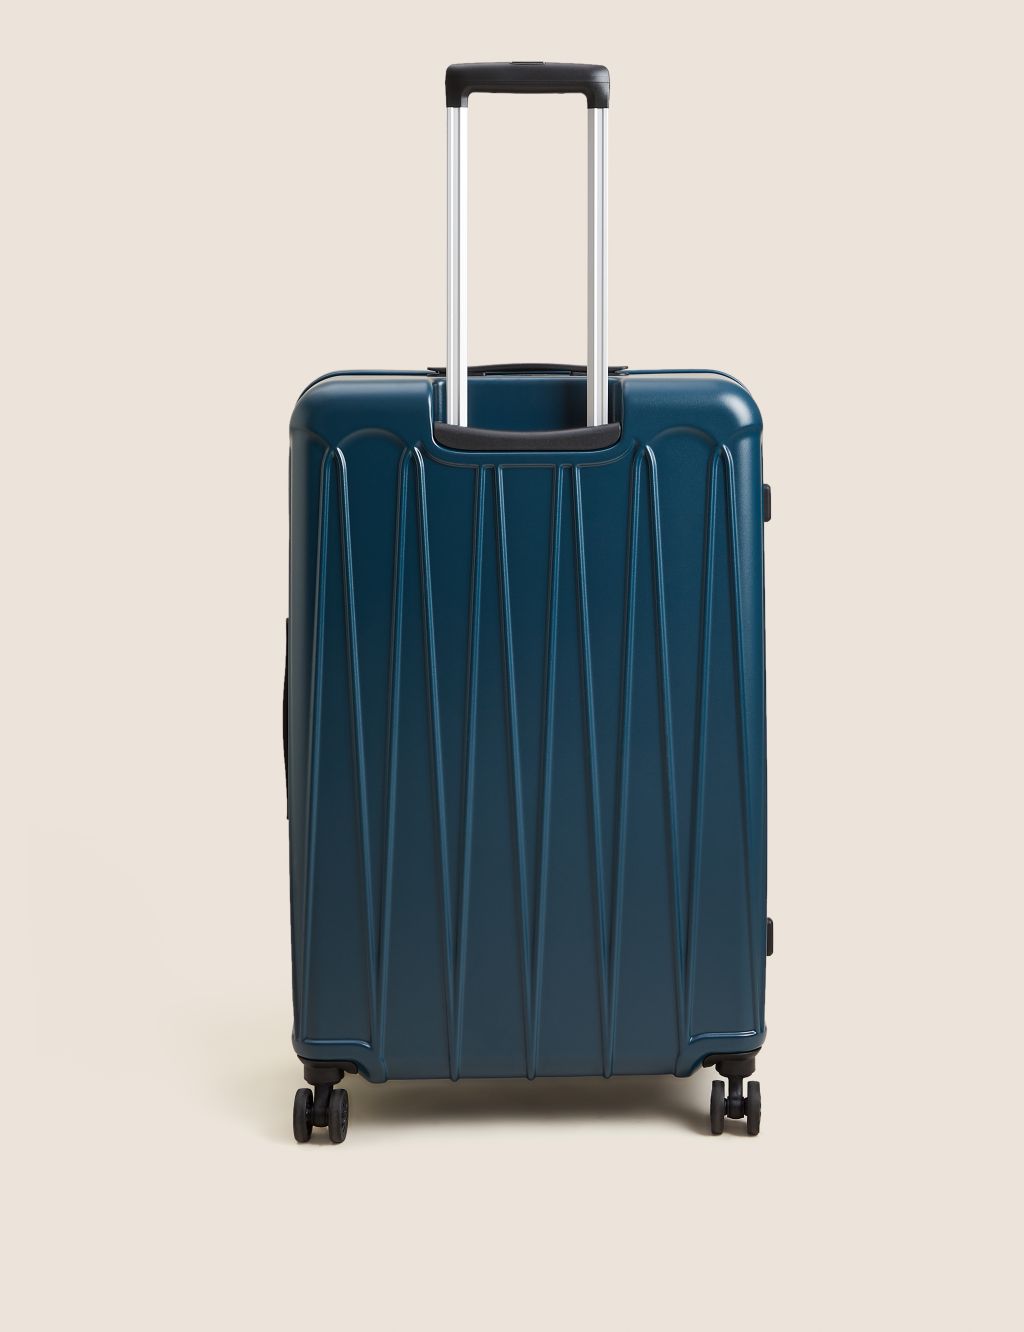 Amalfi 4 Wheel Hard Shell Large Suitcase image 2